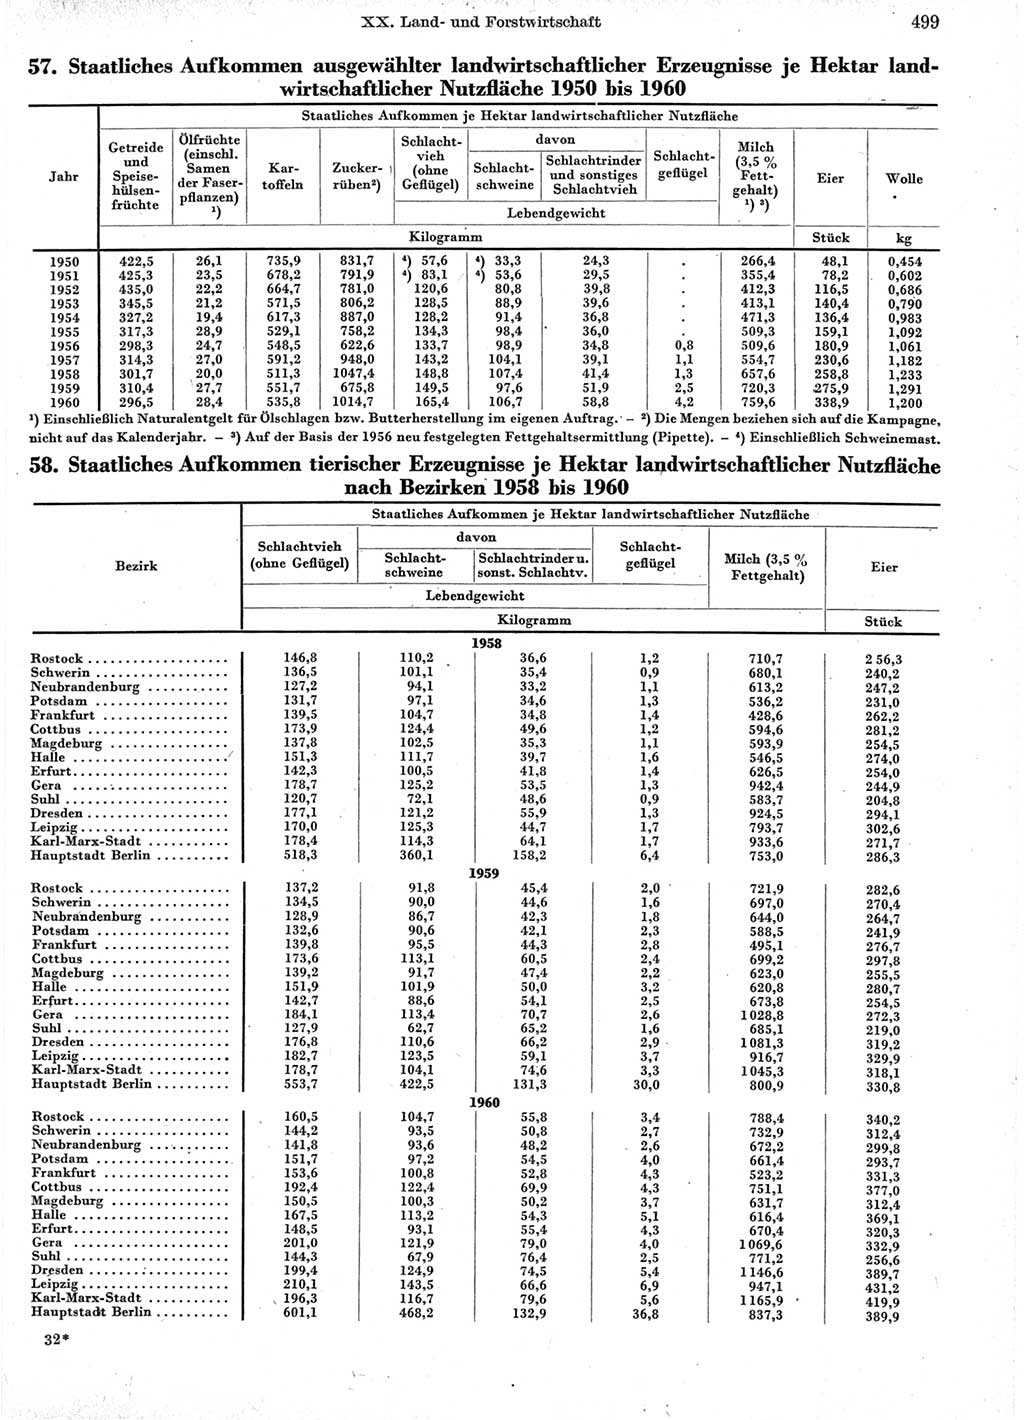 Statistisches Jahrbuch der Deutschen Demokratischen Republik (DDR) 1960-1961, Seite 499 (Stat. Jb. DDR 1960-1961, S. 499)